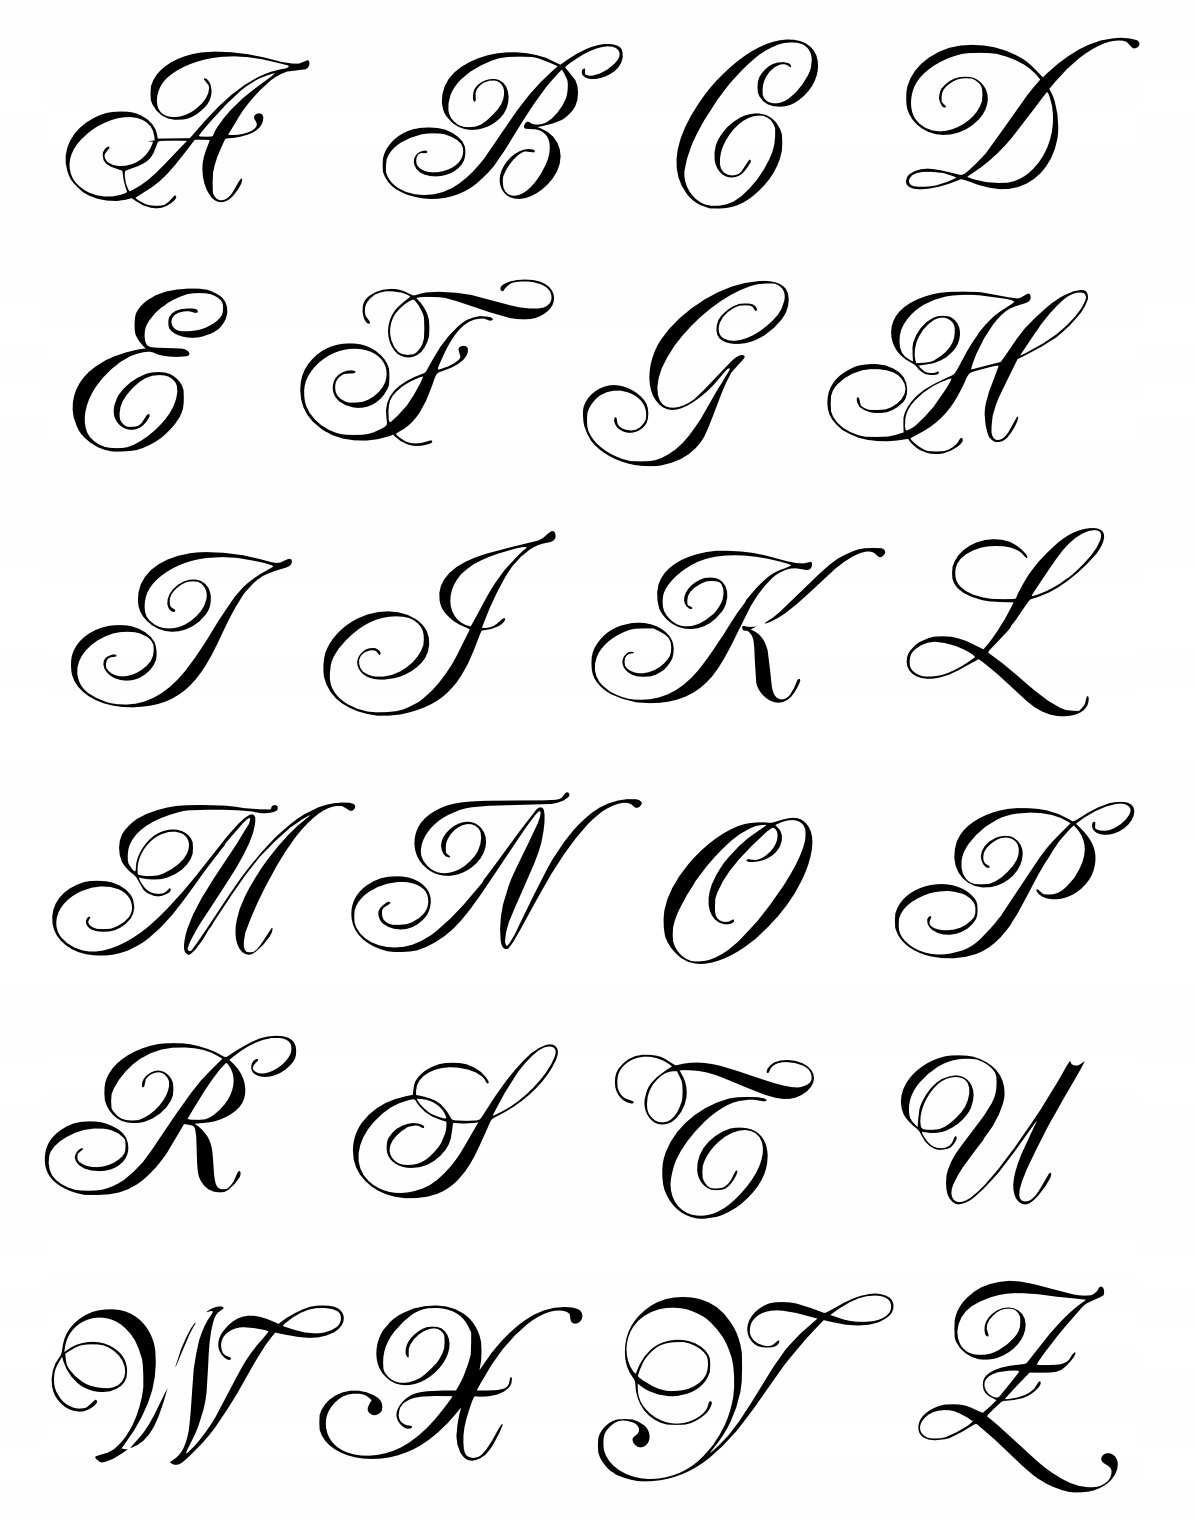 Русский алфавит красивое написание. Красивые буквы. Красивые буквы алфавита. Буквы красивым шрифтом. Буквы кра ивым шрифтом.